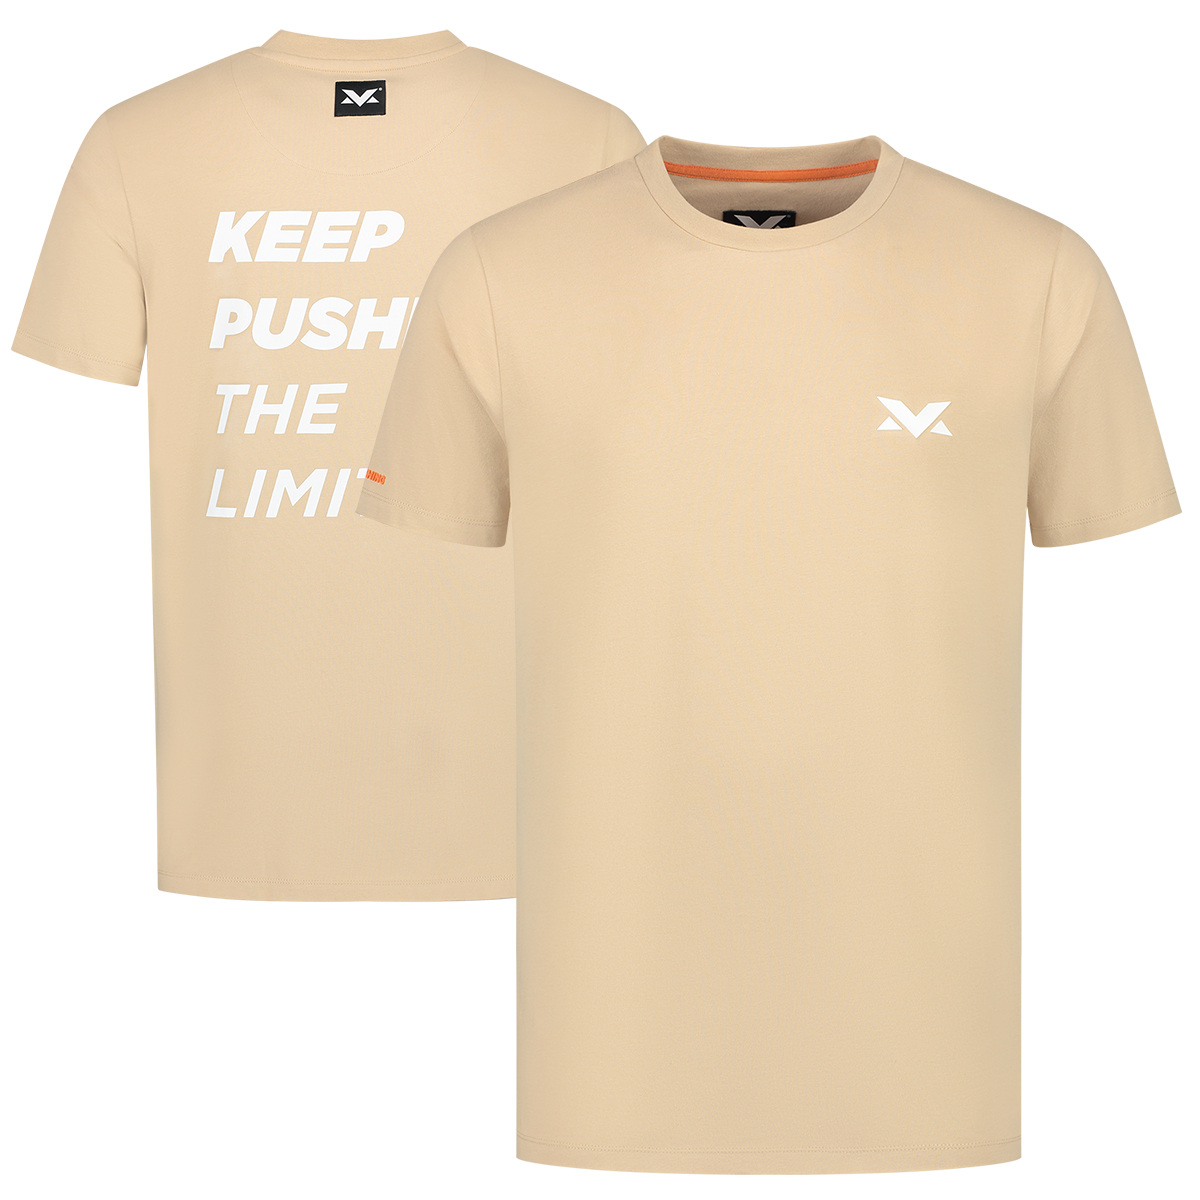 Heren - MV T-shirt The Limits - Camel - XXL - Max Verstappen